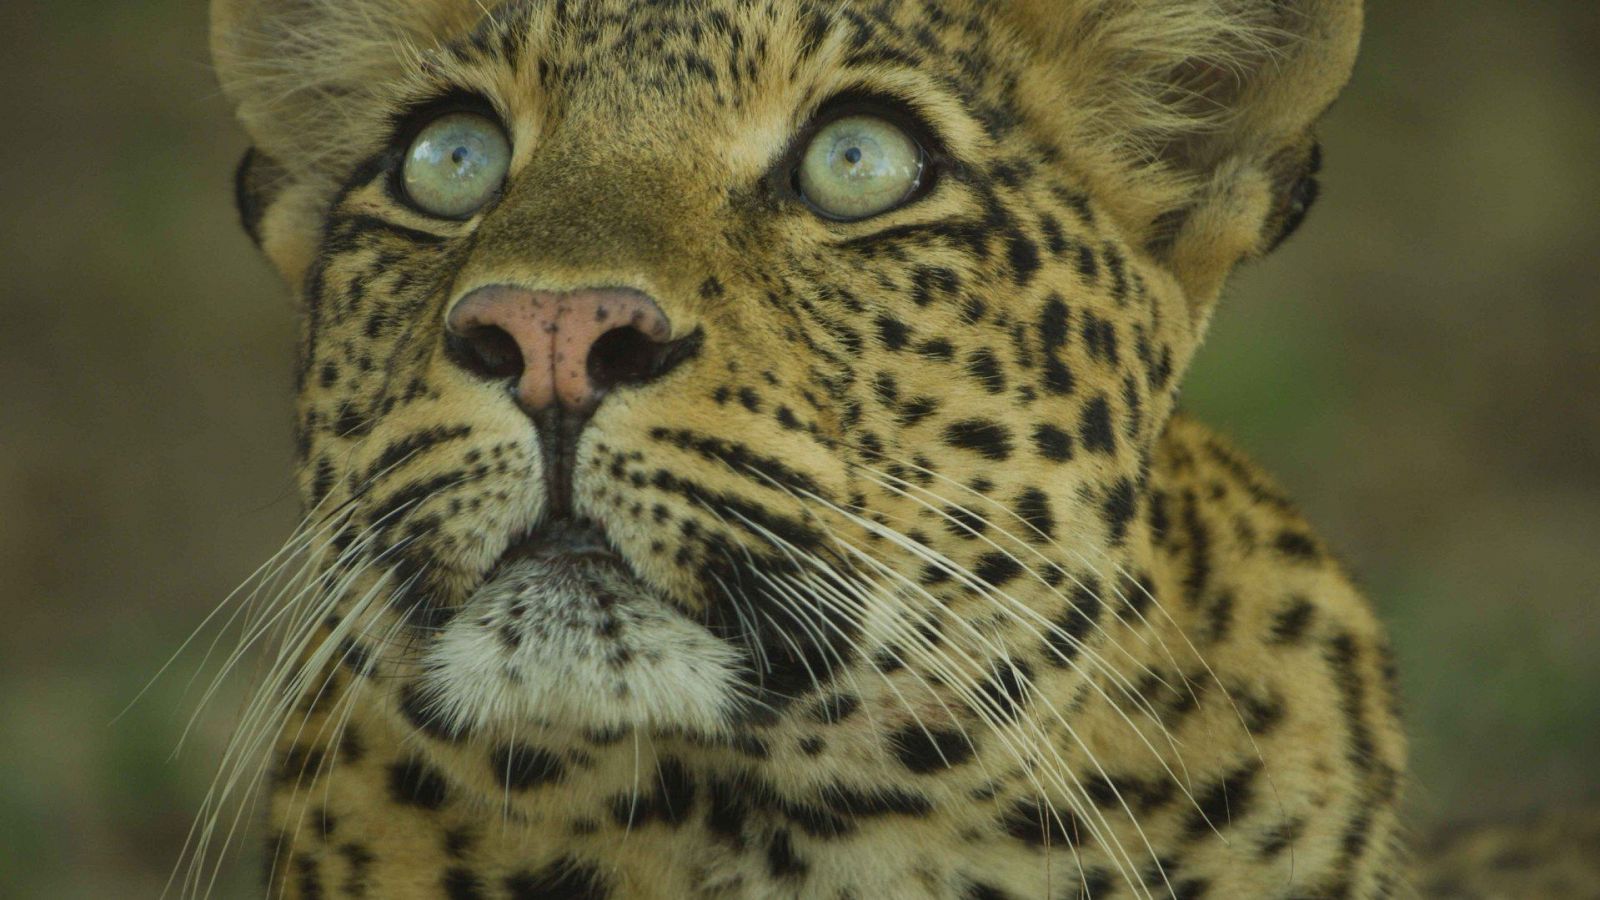 Somos documentales - El legado de la leoparda